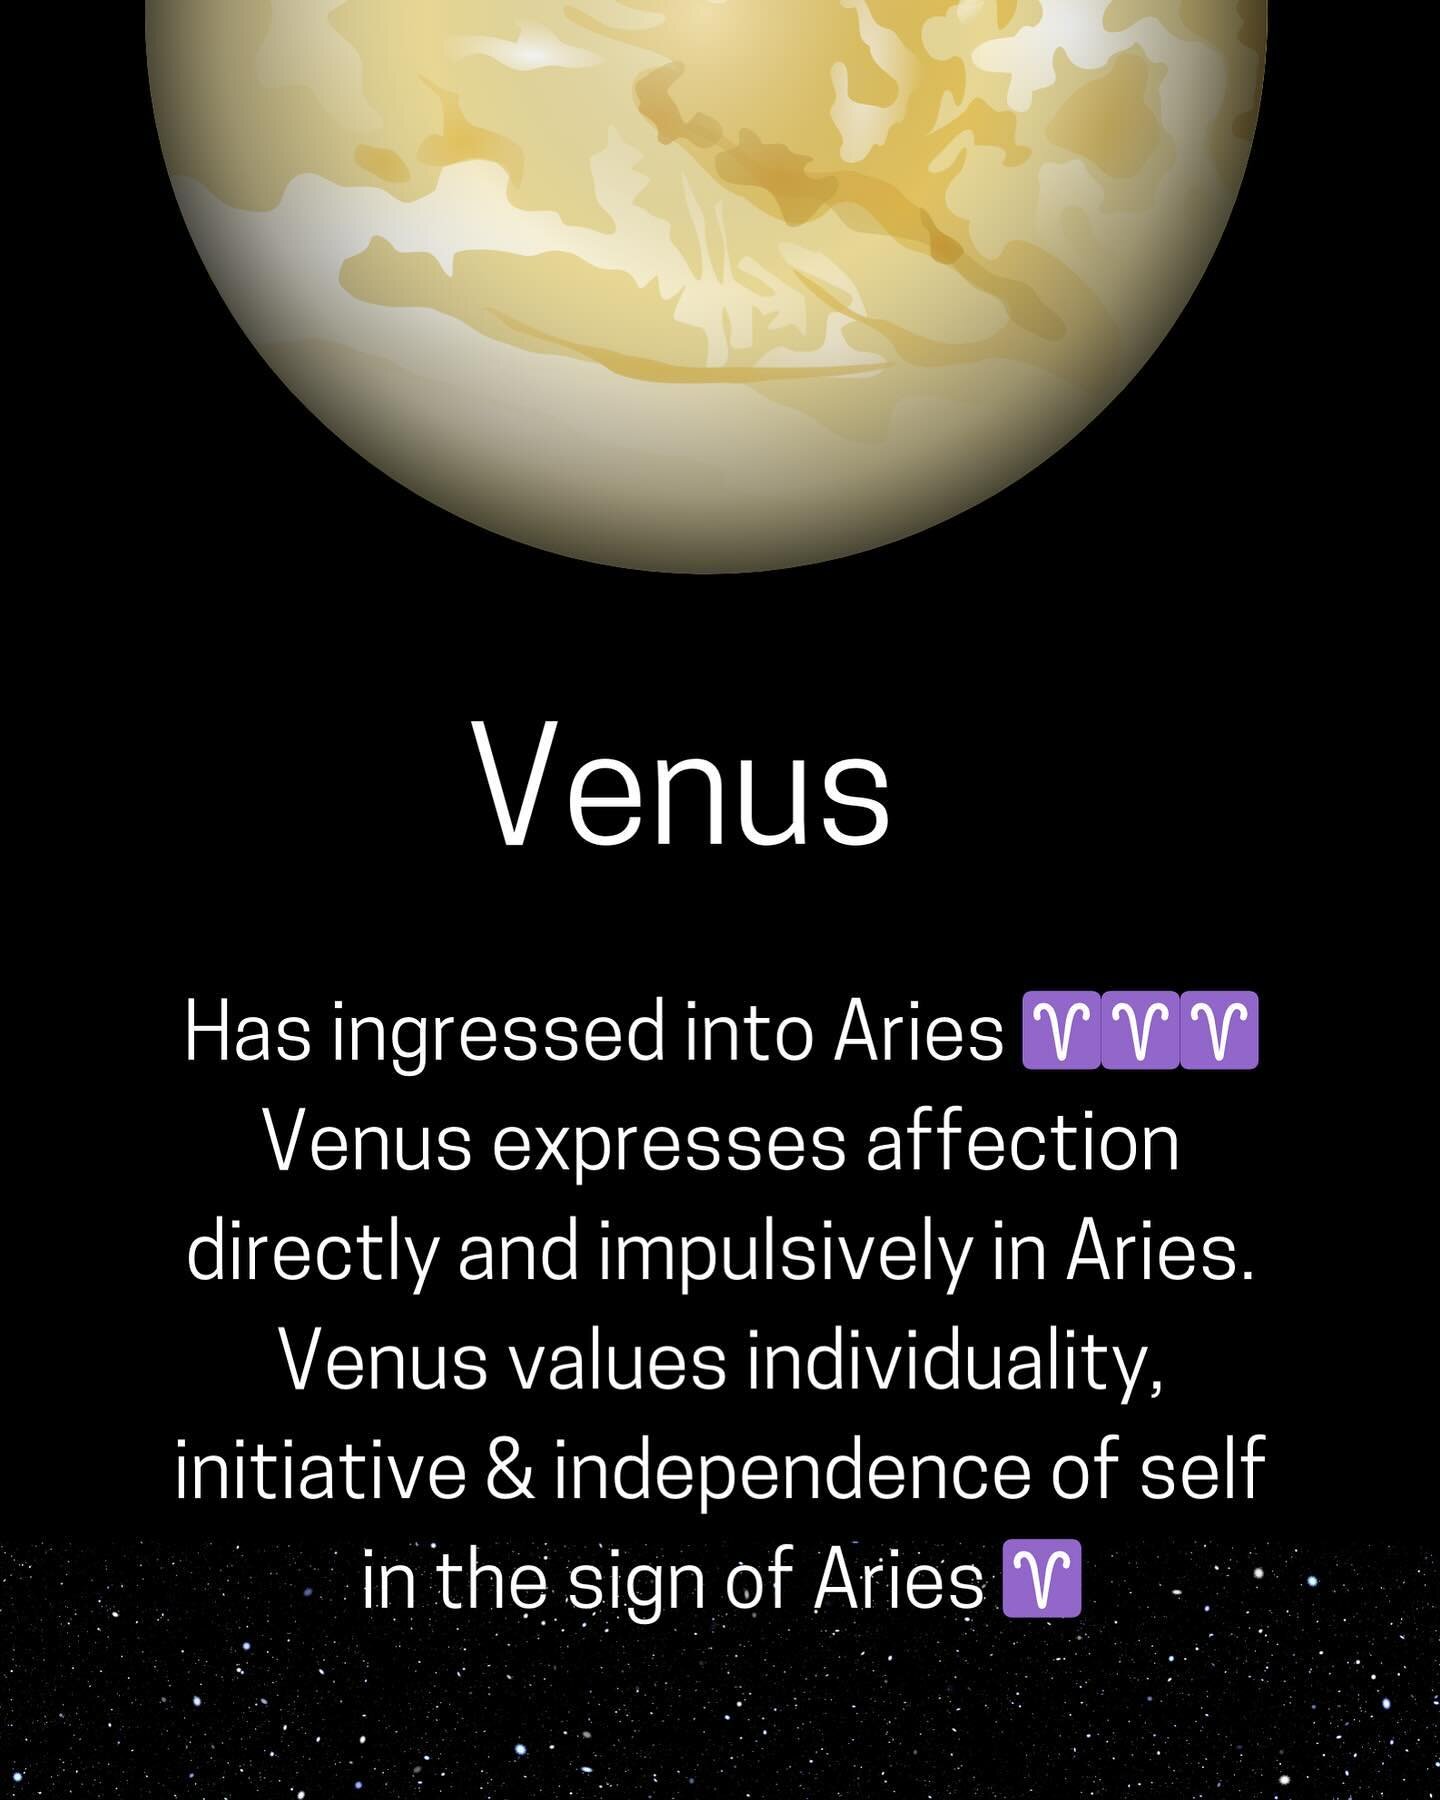 #venus #astro #aries #planets #self #selfesteem #values